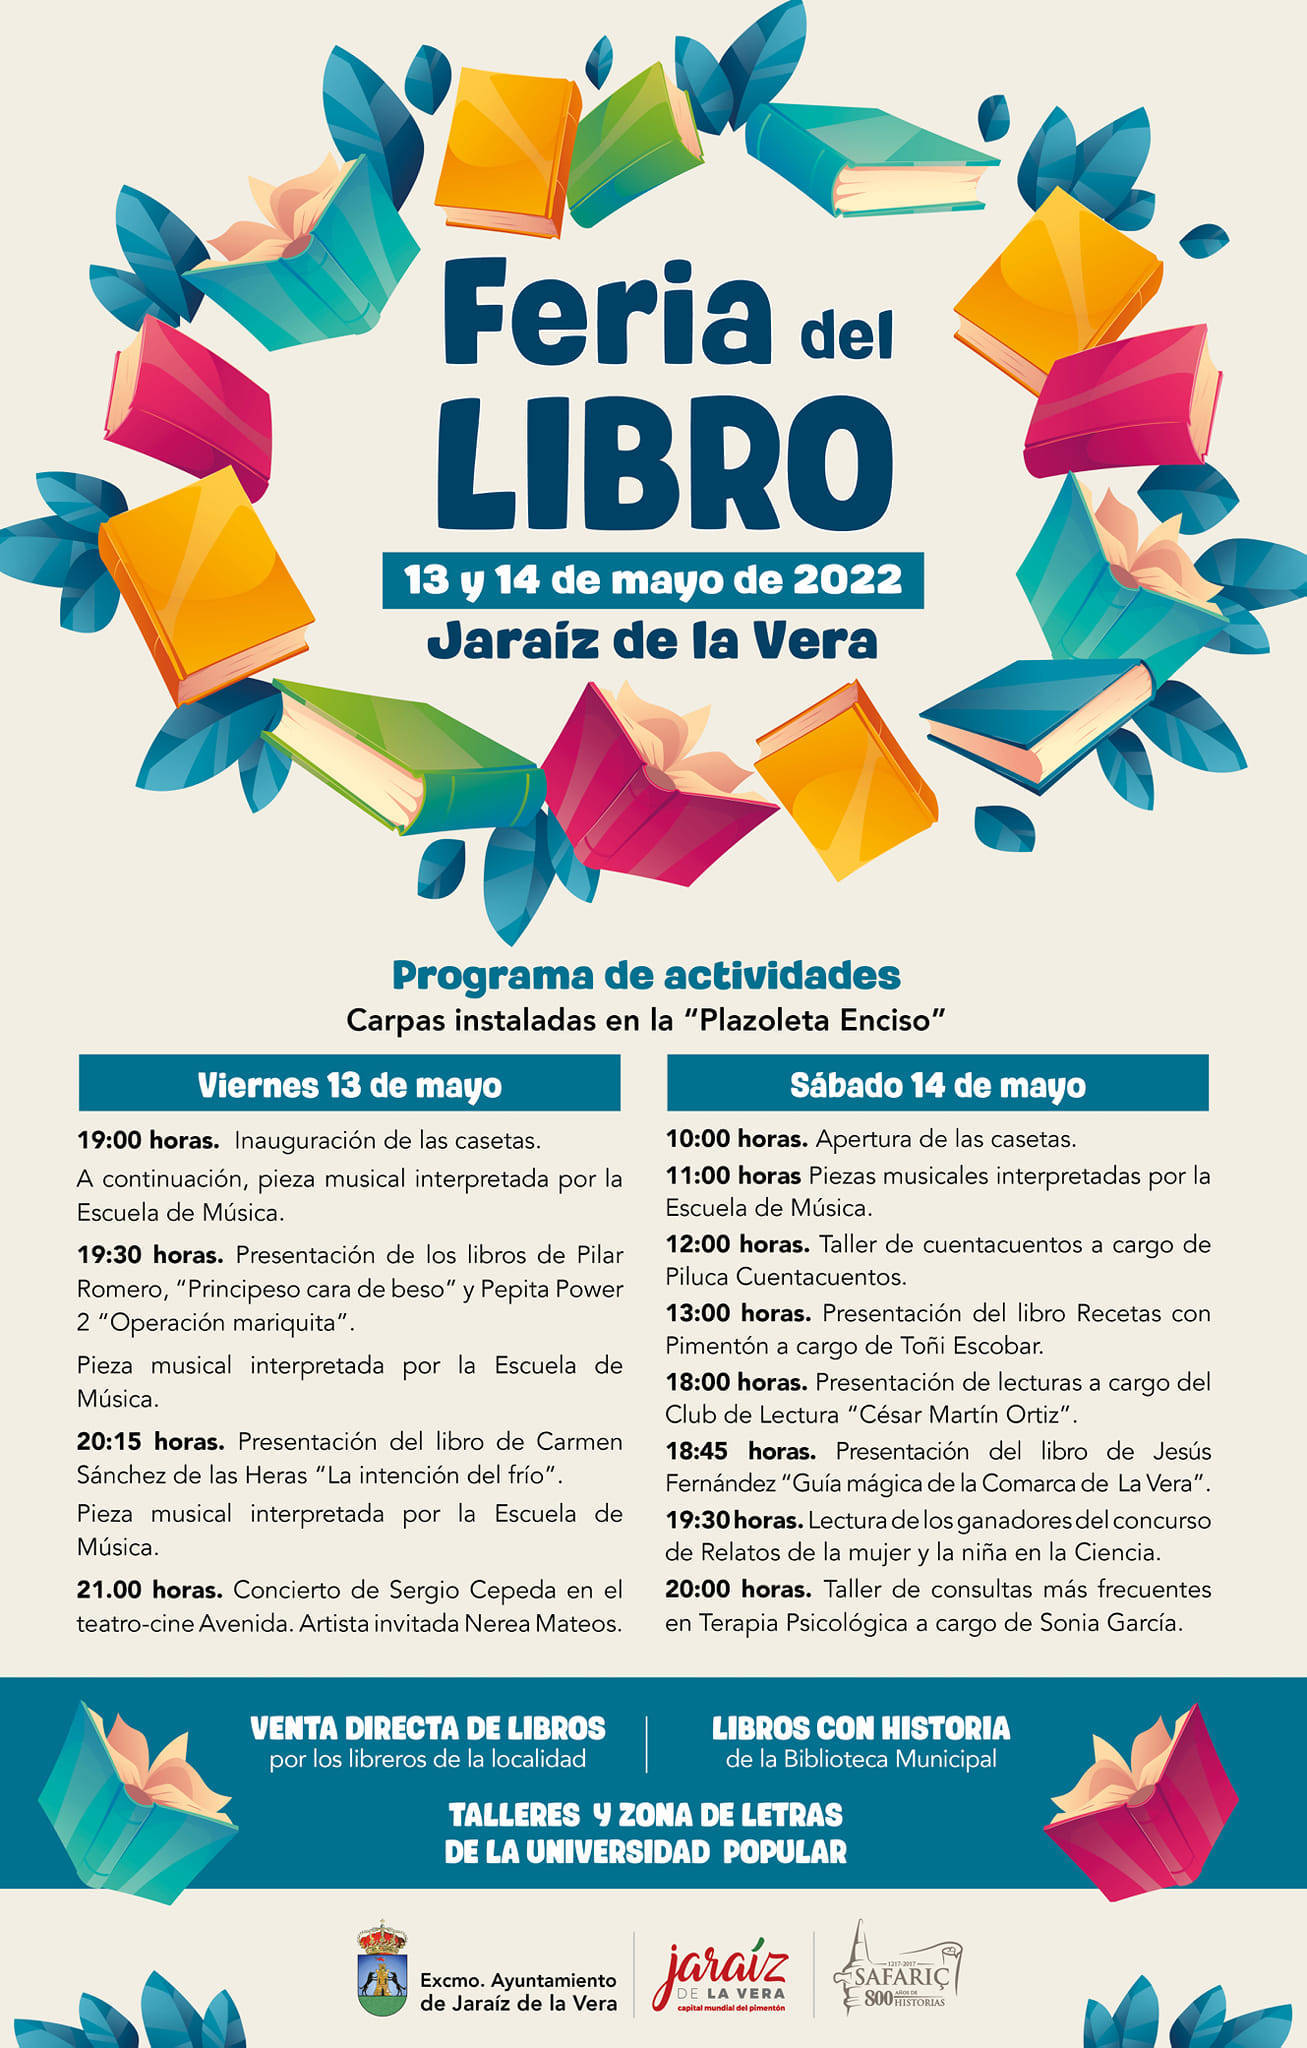 Feria del Libro (2022) - Jaraíz de la Vera (Cáceres)